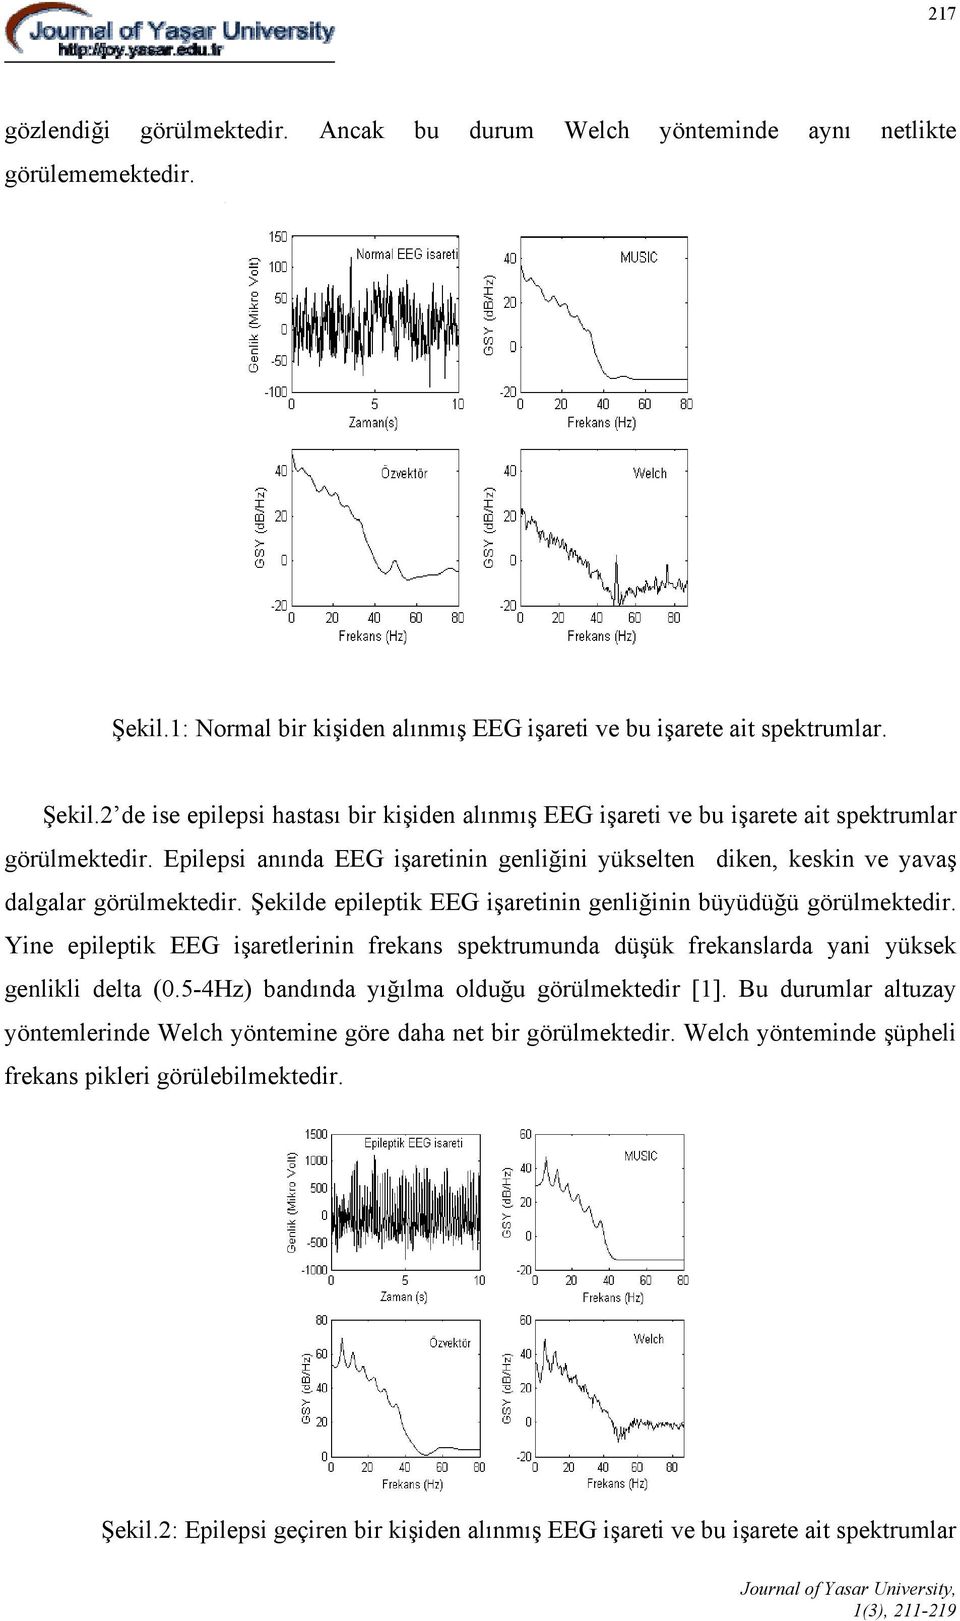 Epilepsi anında EEG işaretinin genliğini yükselten diken, keskin ve yavaş dalgalar görülmektedir. Şekilde epileptik EEG işaretinin genliğinin büyüdüğü görülmektedir.